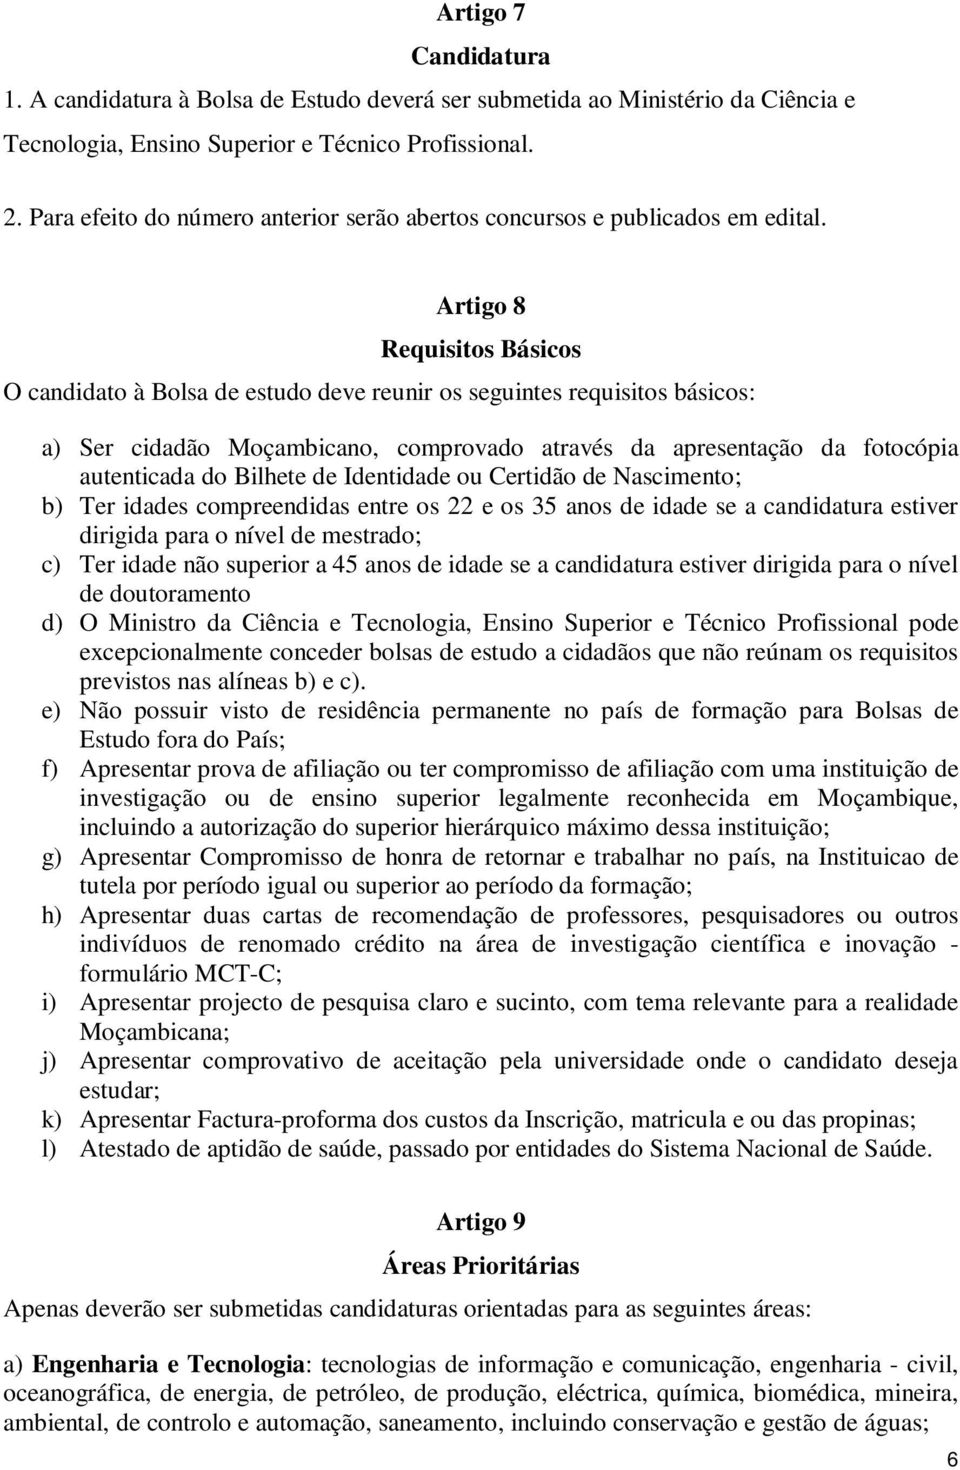 Artigo 8 Requisitos Básicos O candidato à Bolsa de estudo deve reunir os seguintes requisitos básicos: a) Ser cidadão Moçambicano, comprovado através da apresentação da fotocópia autenticada do